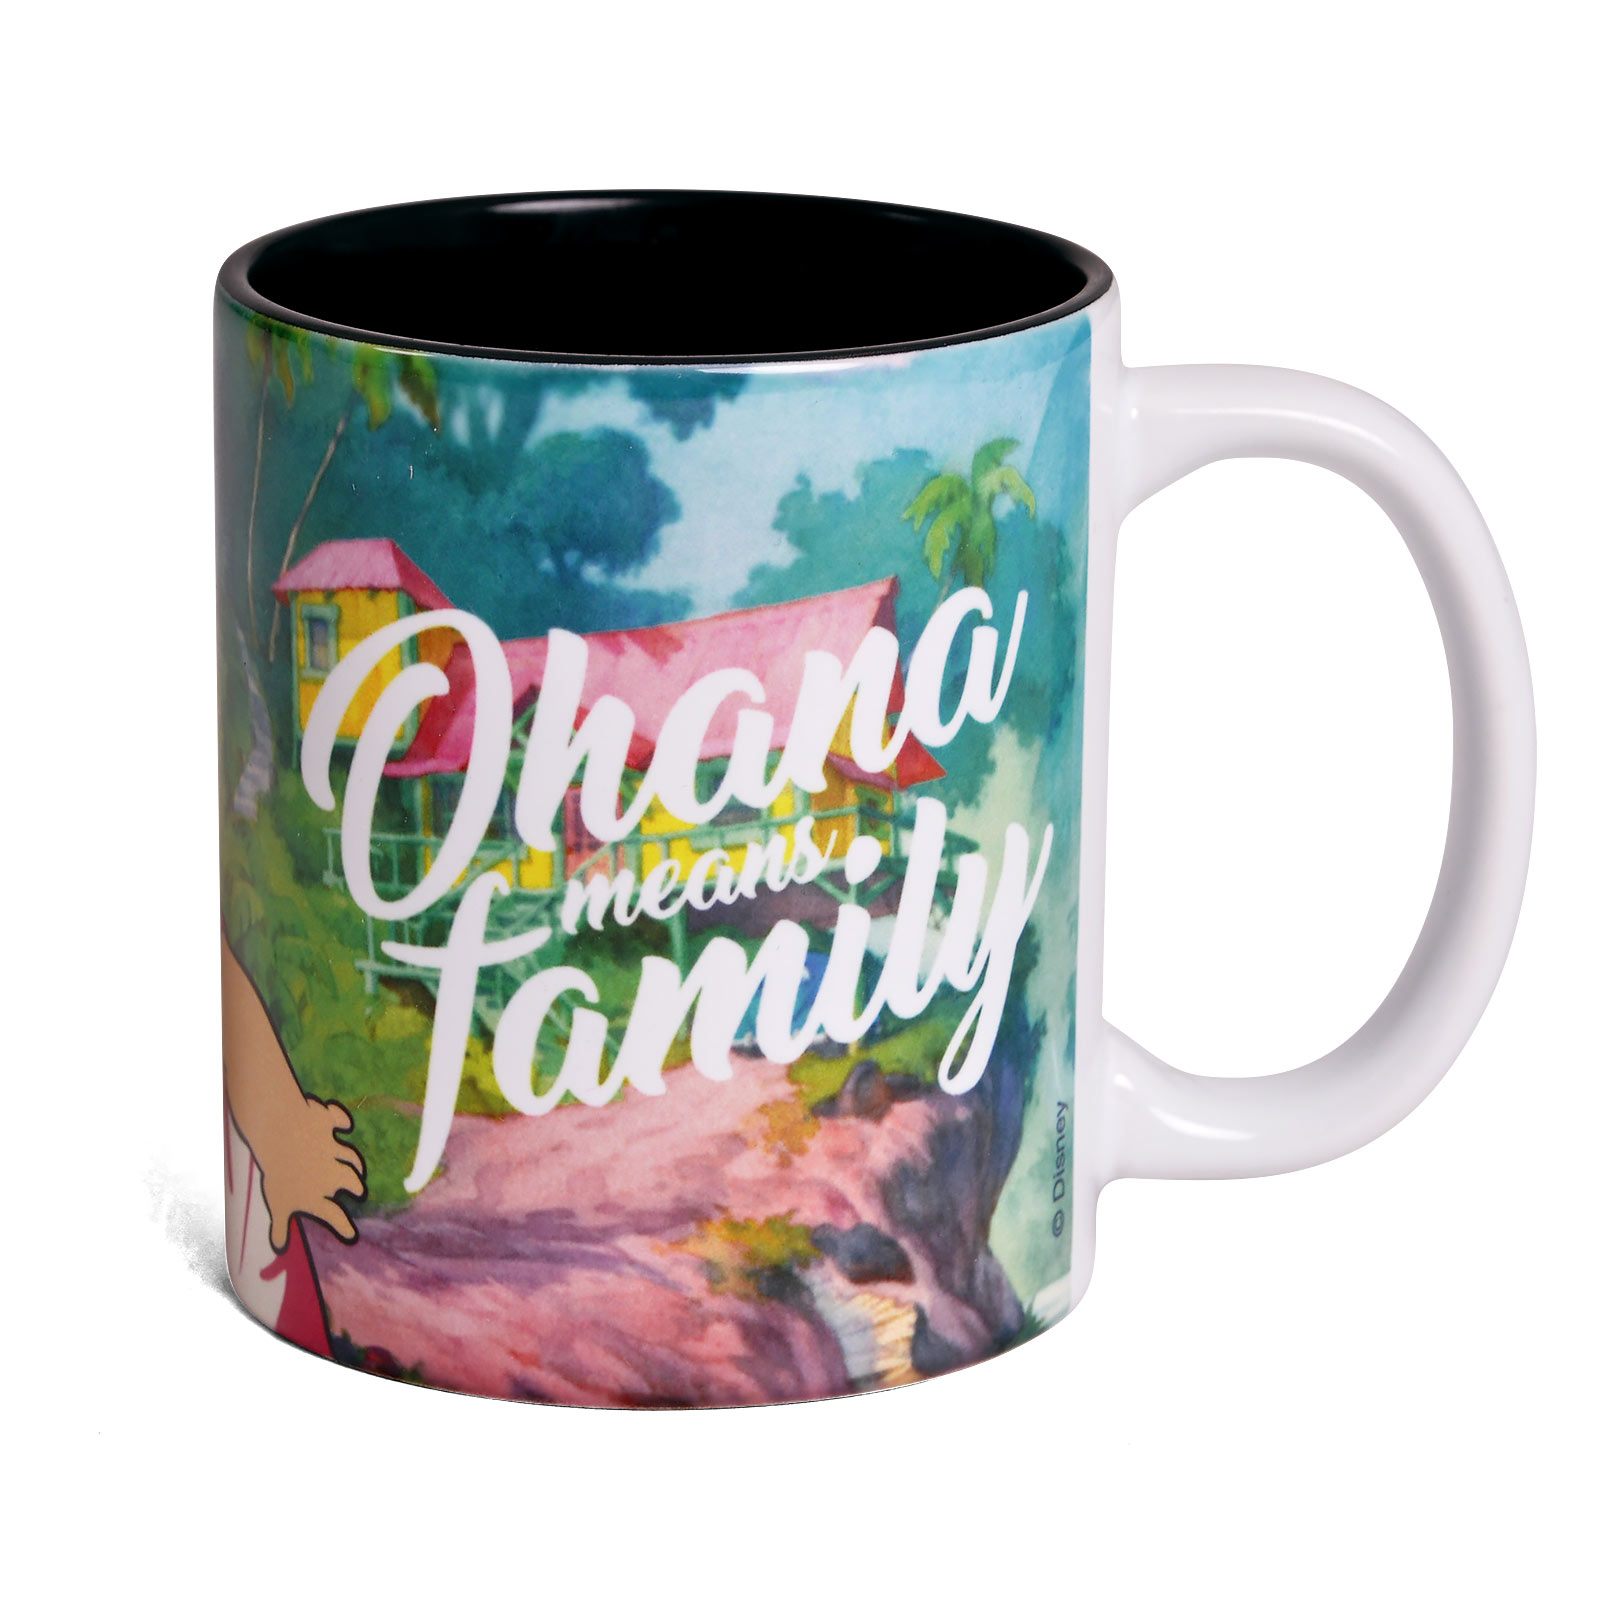 Lilo & Stitch - Ohana Means Family Mug